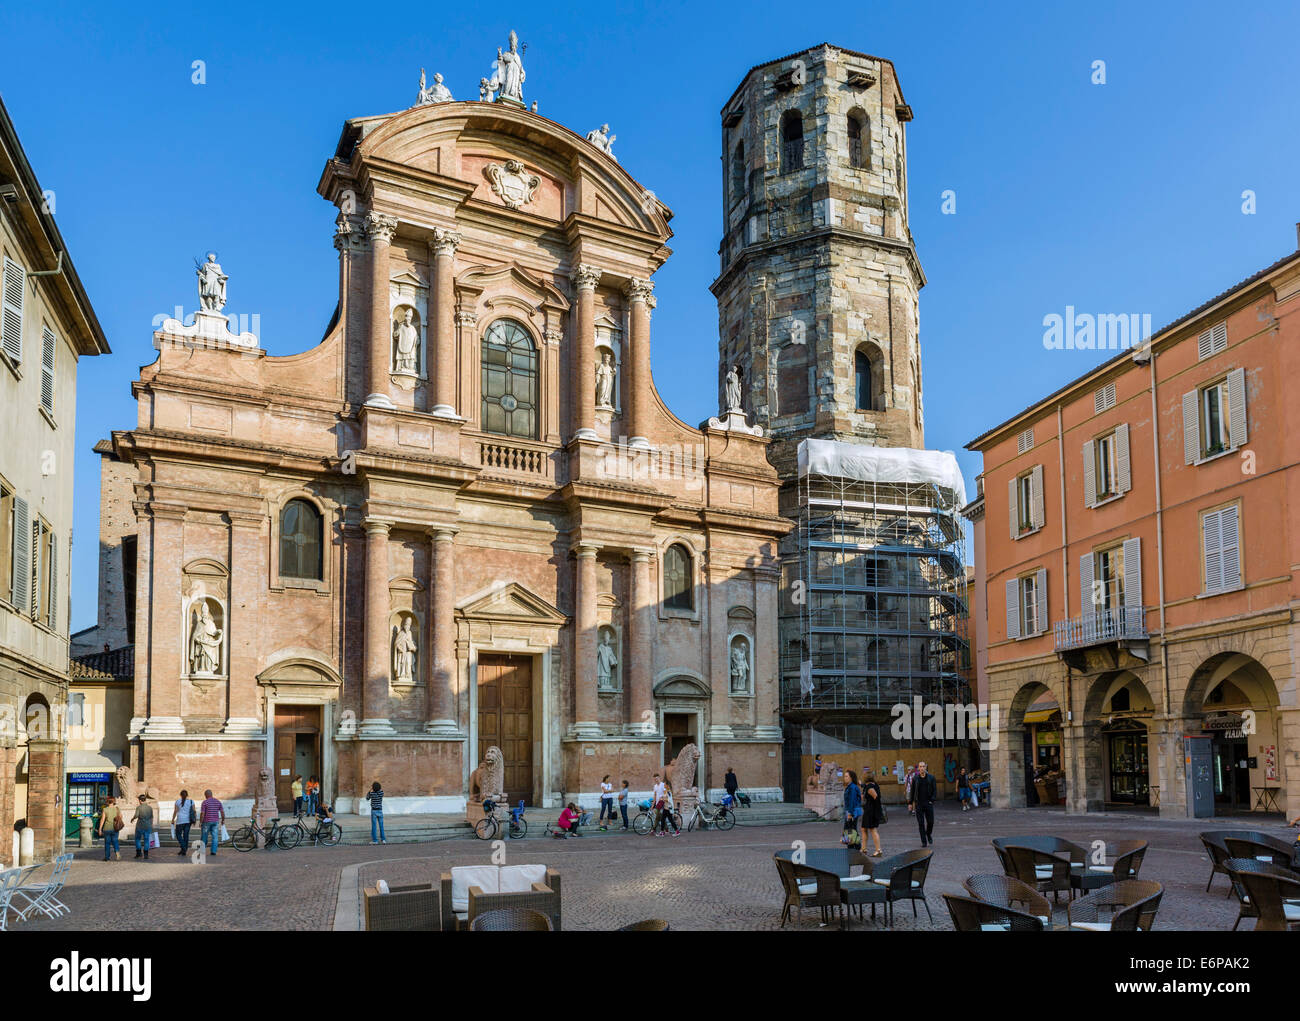 The Basilica of San Prospero, Piazza San Prospero, Reggio Emila (Reggio nell'Emilia), Emilia Romagna, Italy Stock Photo